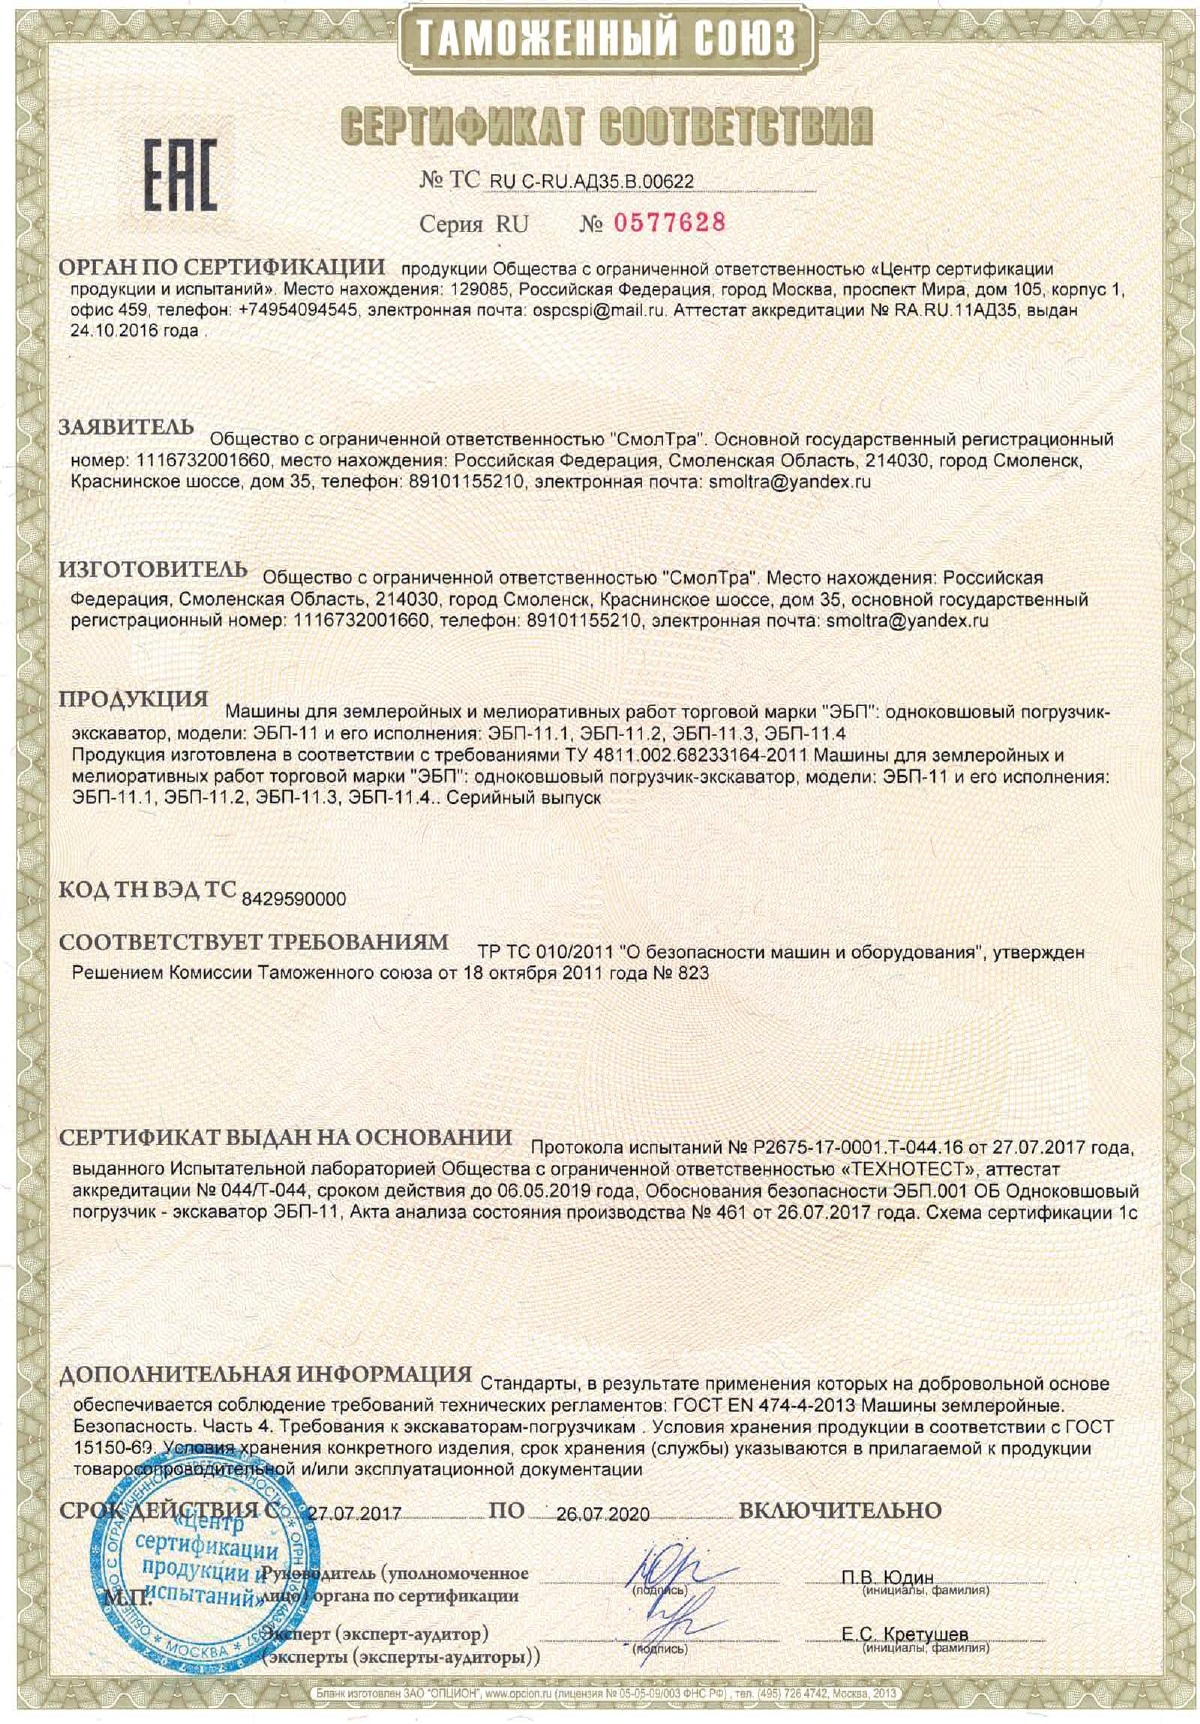 Сертификат соответствия ЭБП-11 и его модификации